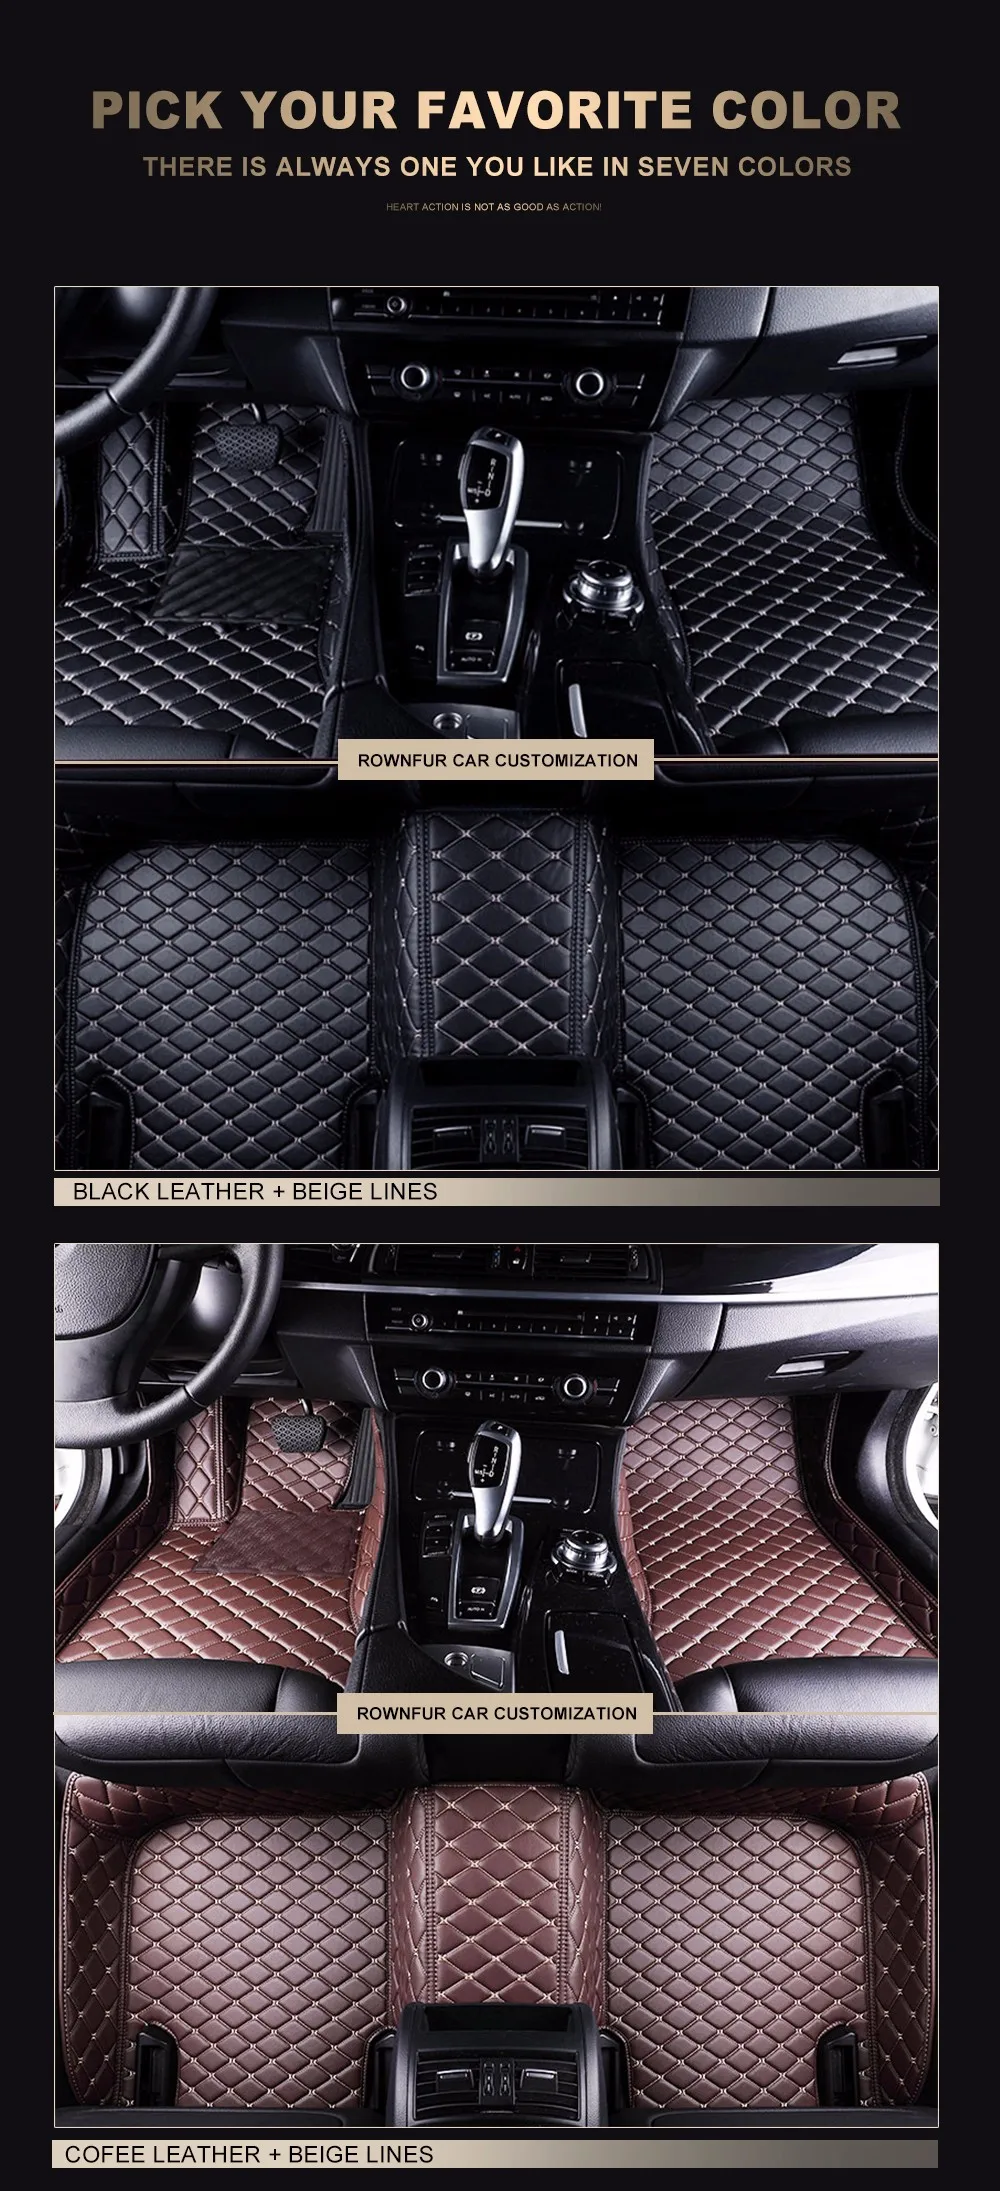 Rownfur автомобиля Коврики для Nissan X-Trail T31 защитить автомобиль чистке Водонепроницаемый кожа Коврики авто интерьер автомобиля Ковры коврики